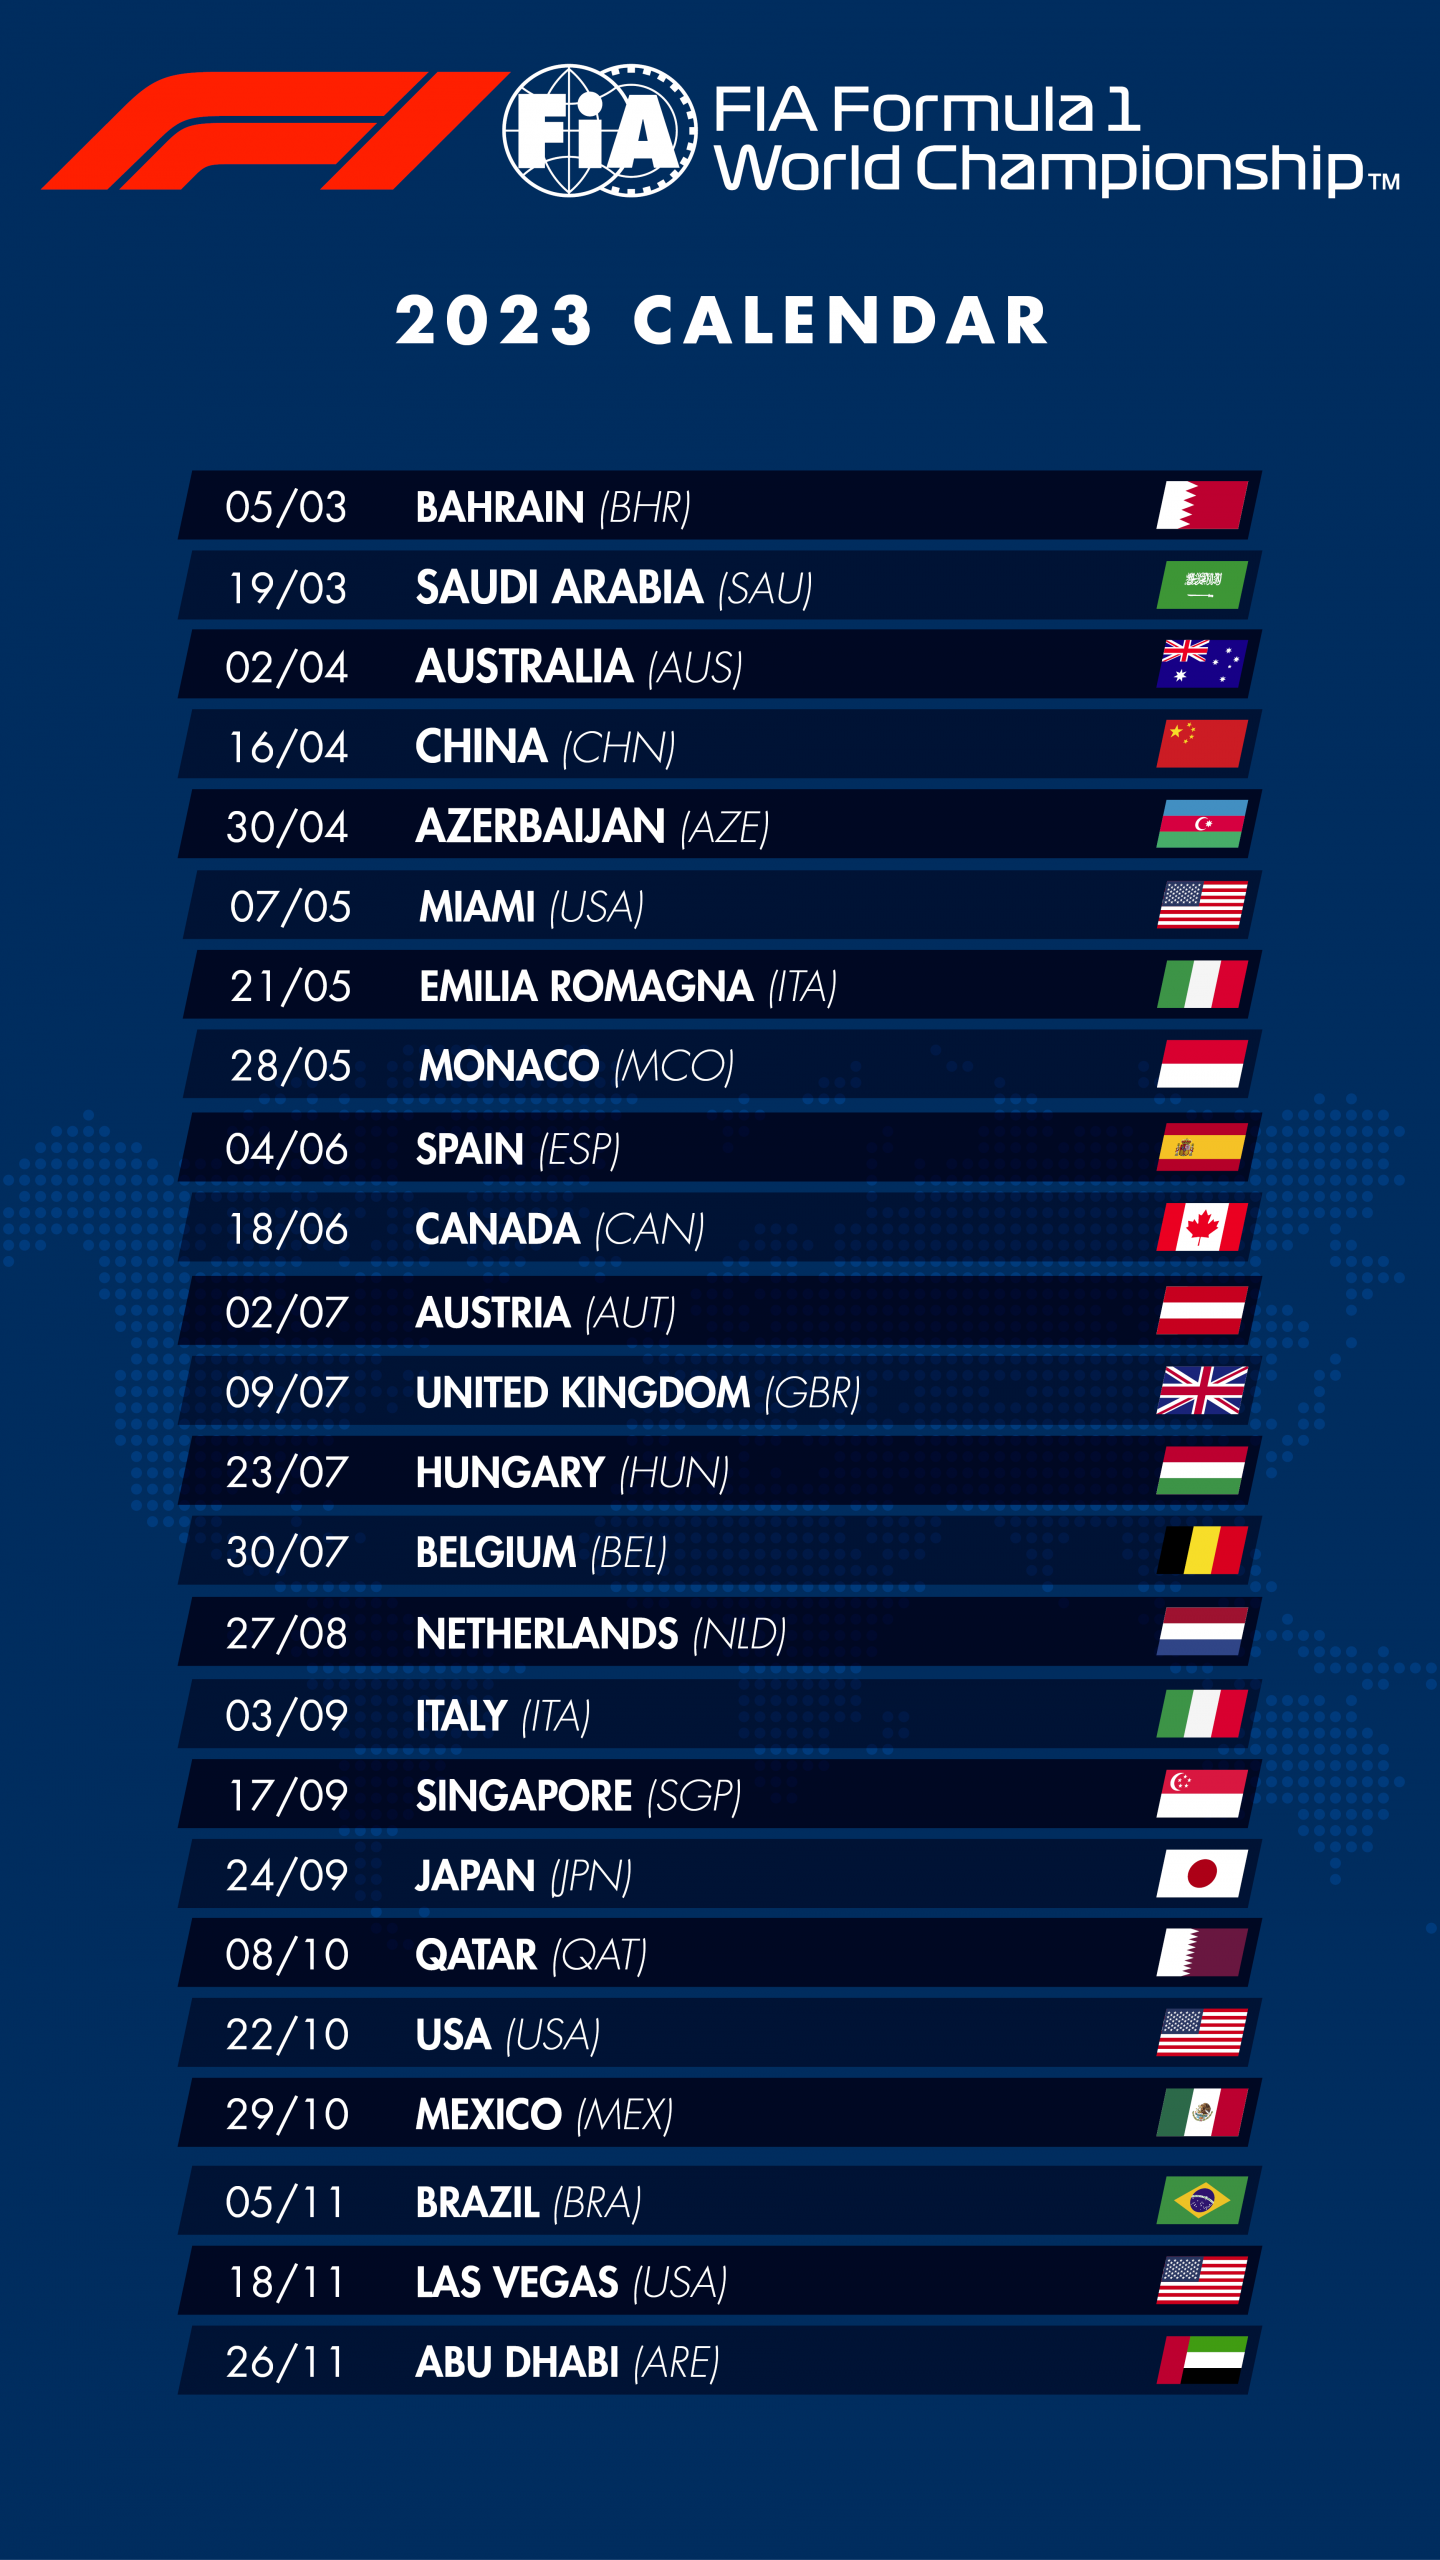 Календарь Формулы 1 на 2023 год © FIA